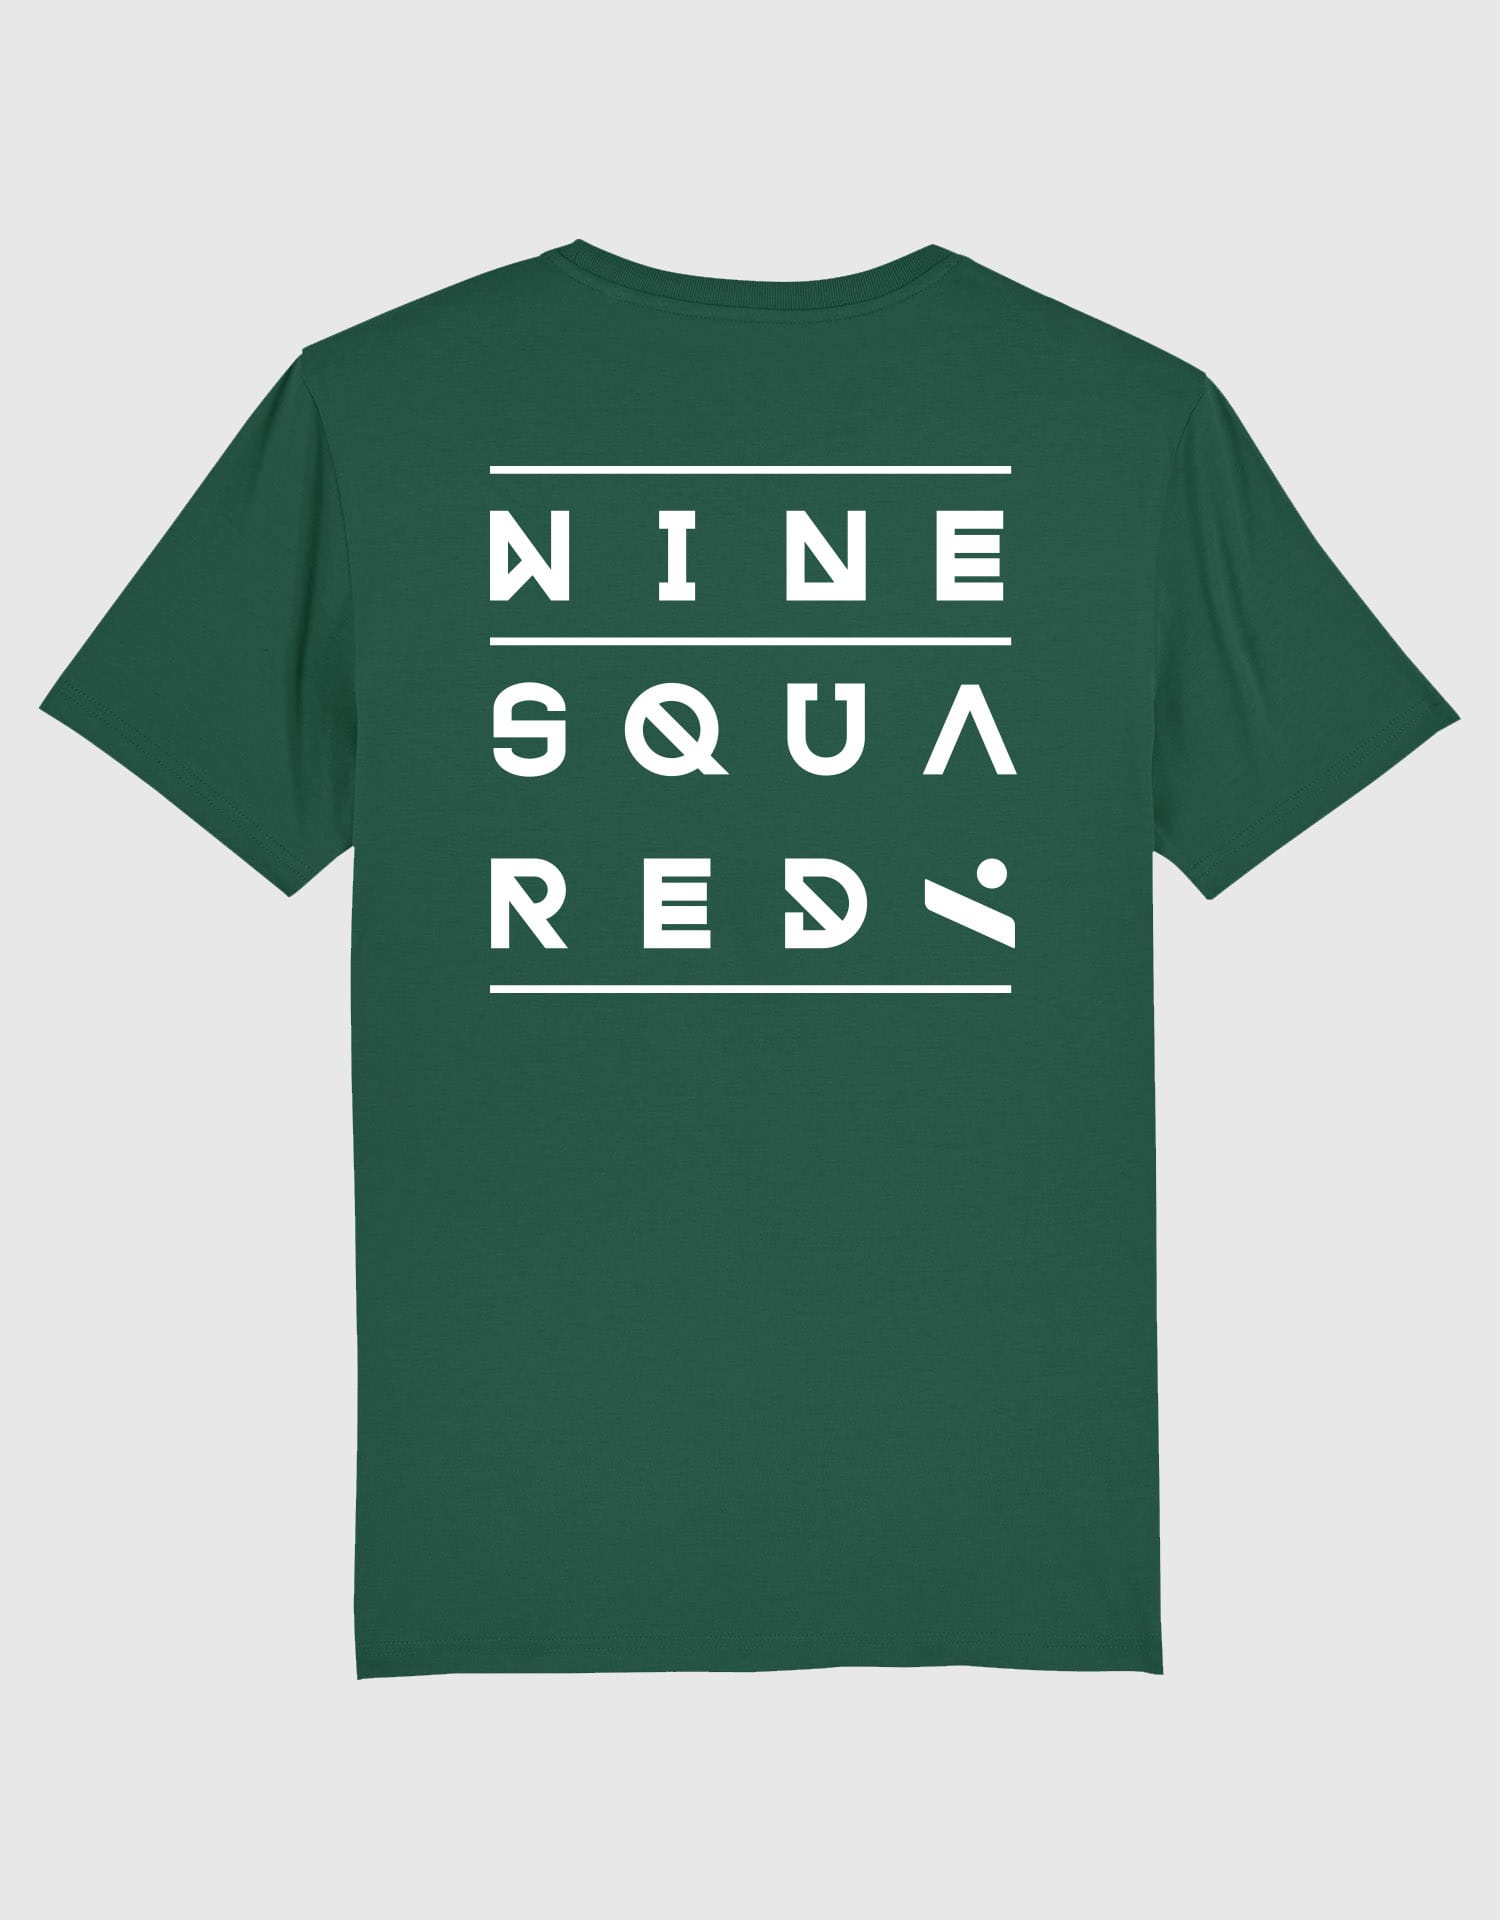 ninesquared-tshirt-green-elements-bk-U